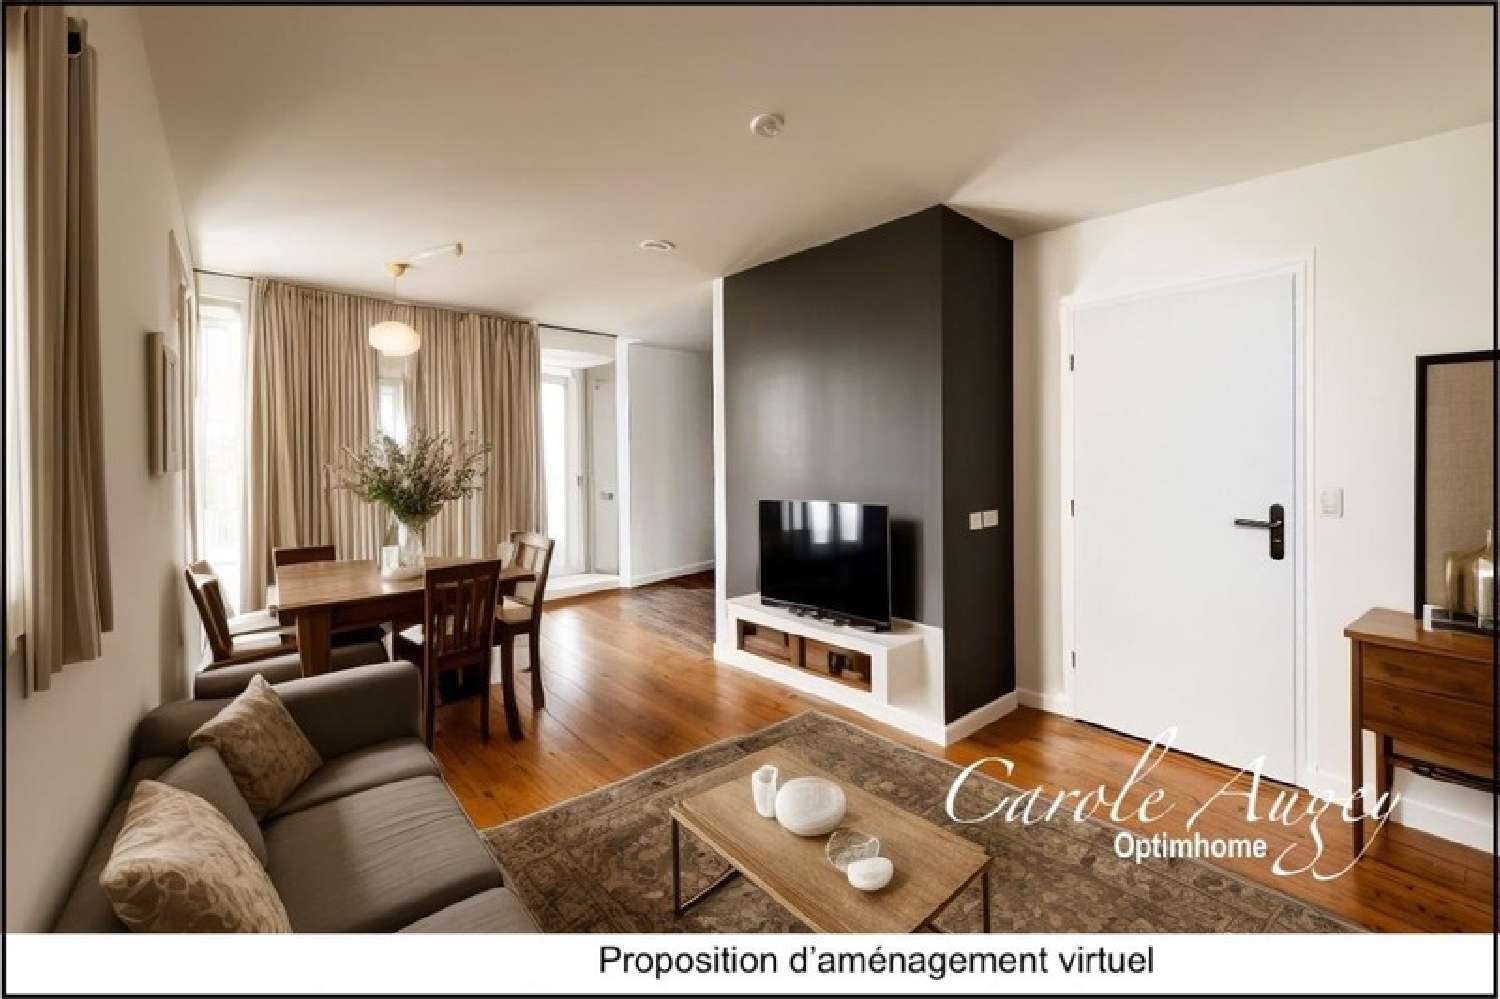 Villandraut Gironde Wohnung/ Apartment Bild 6839698